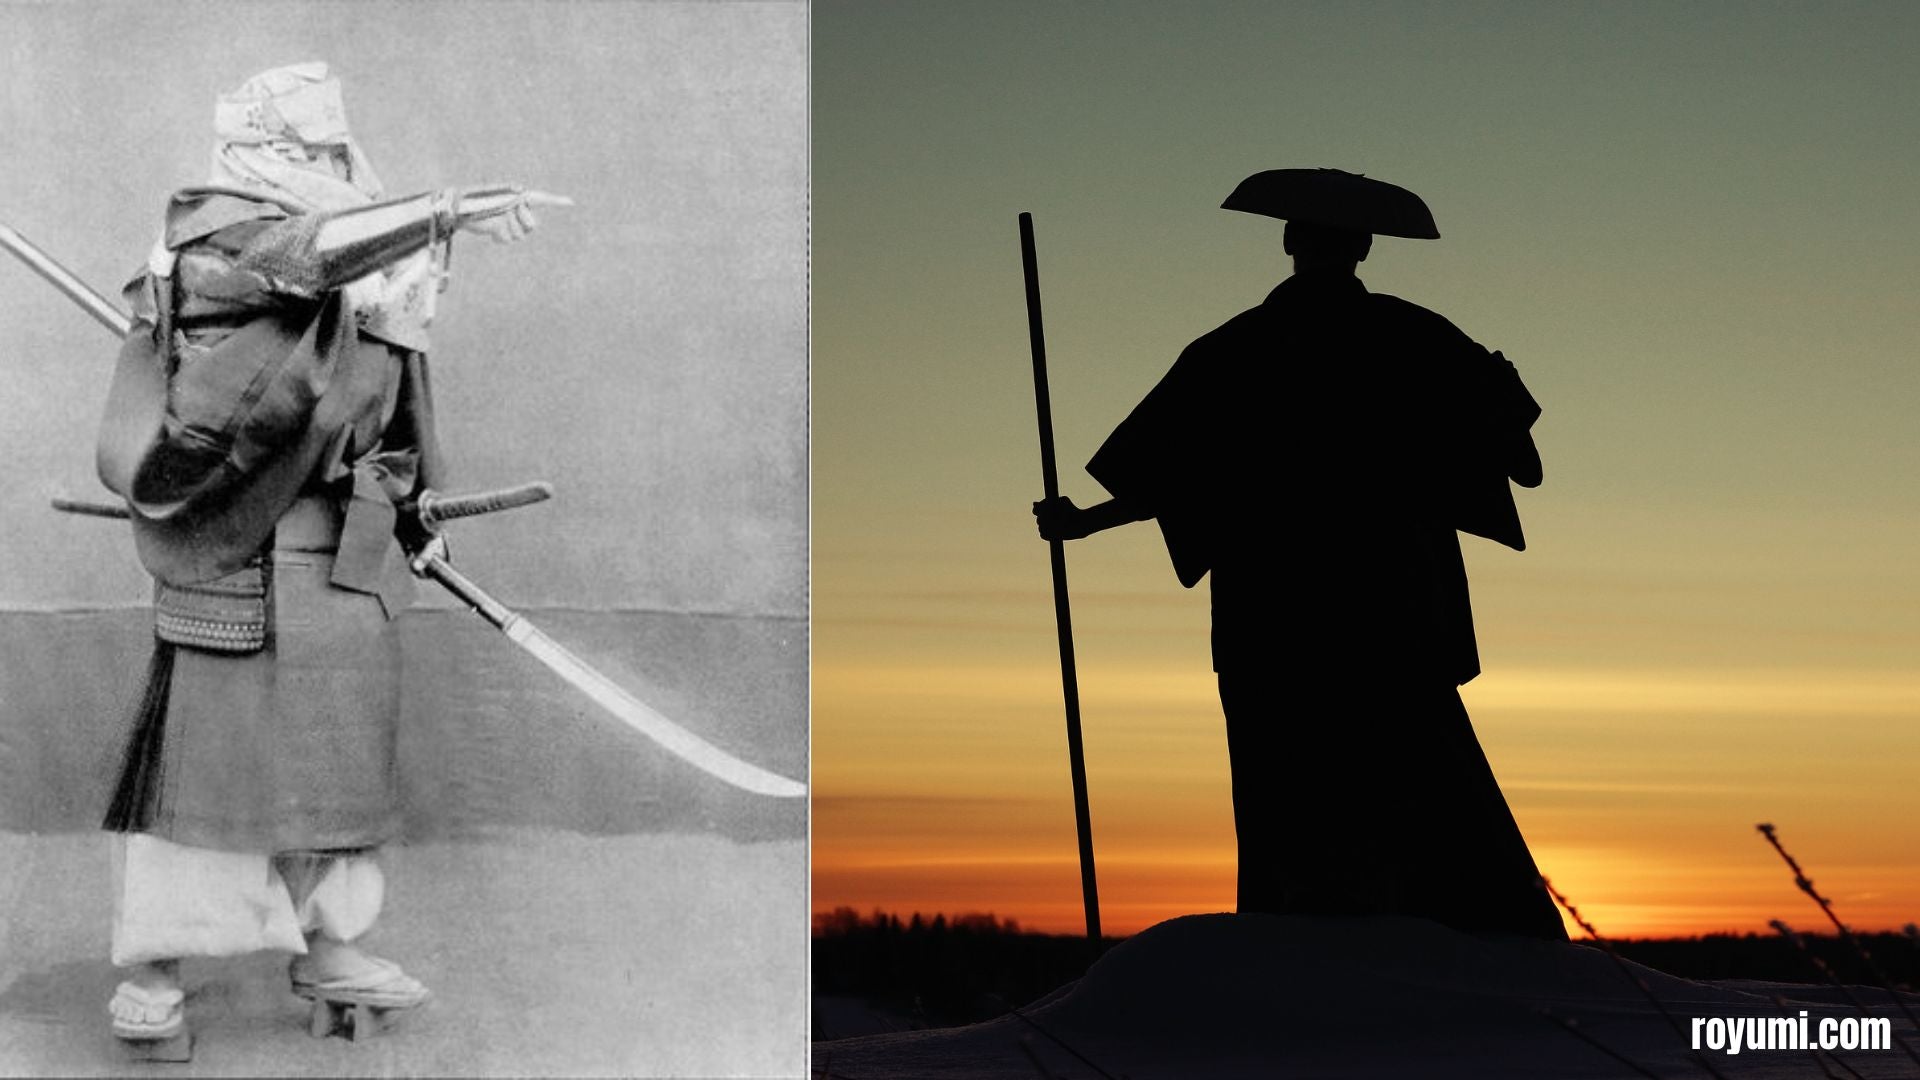 忘れられた日本の戦士たち: サムライと忍者を超えて